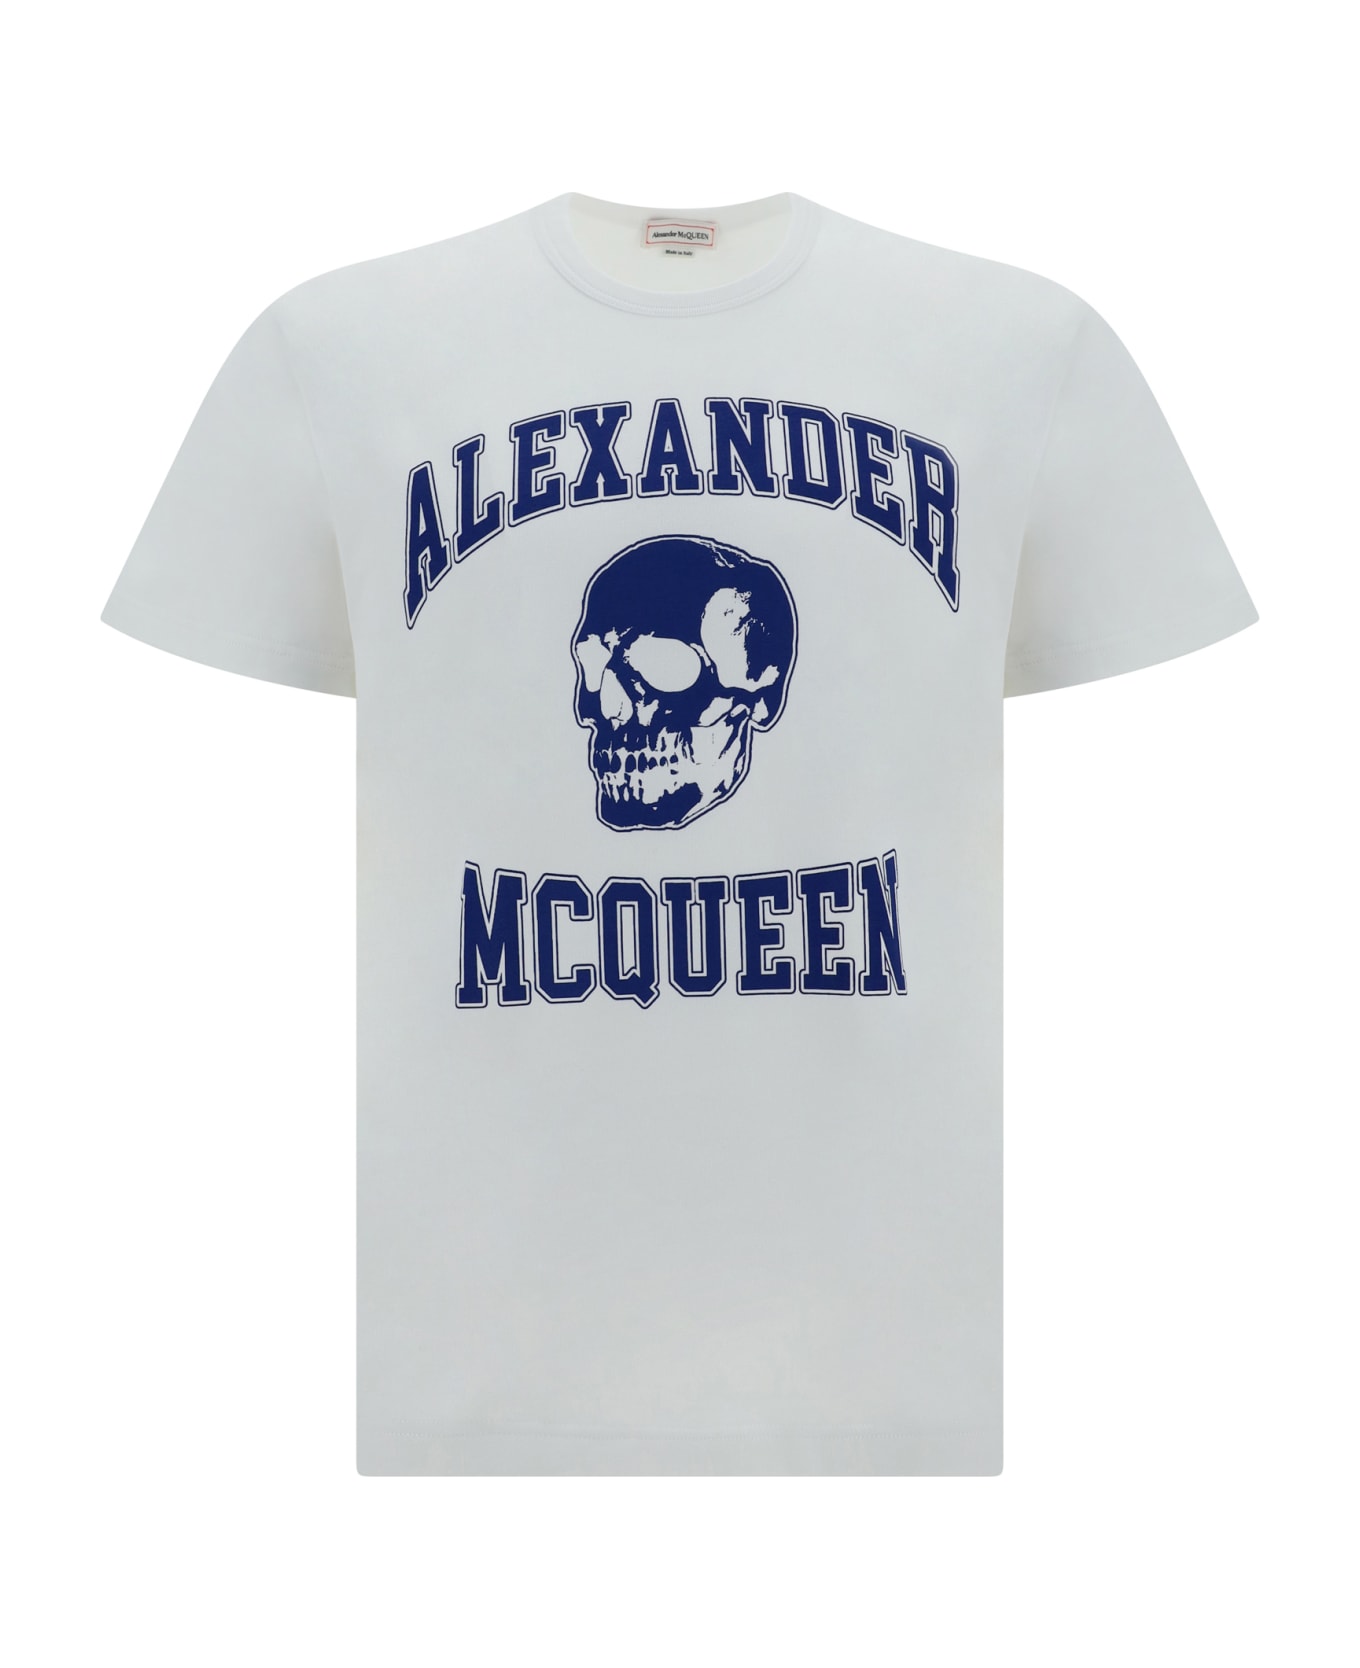 Alexander McQueen T-shirt - White/indigo シャツ